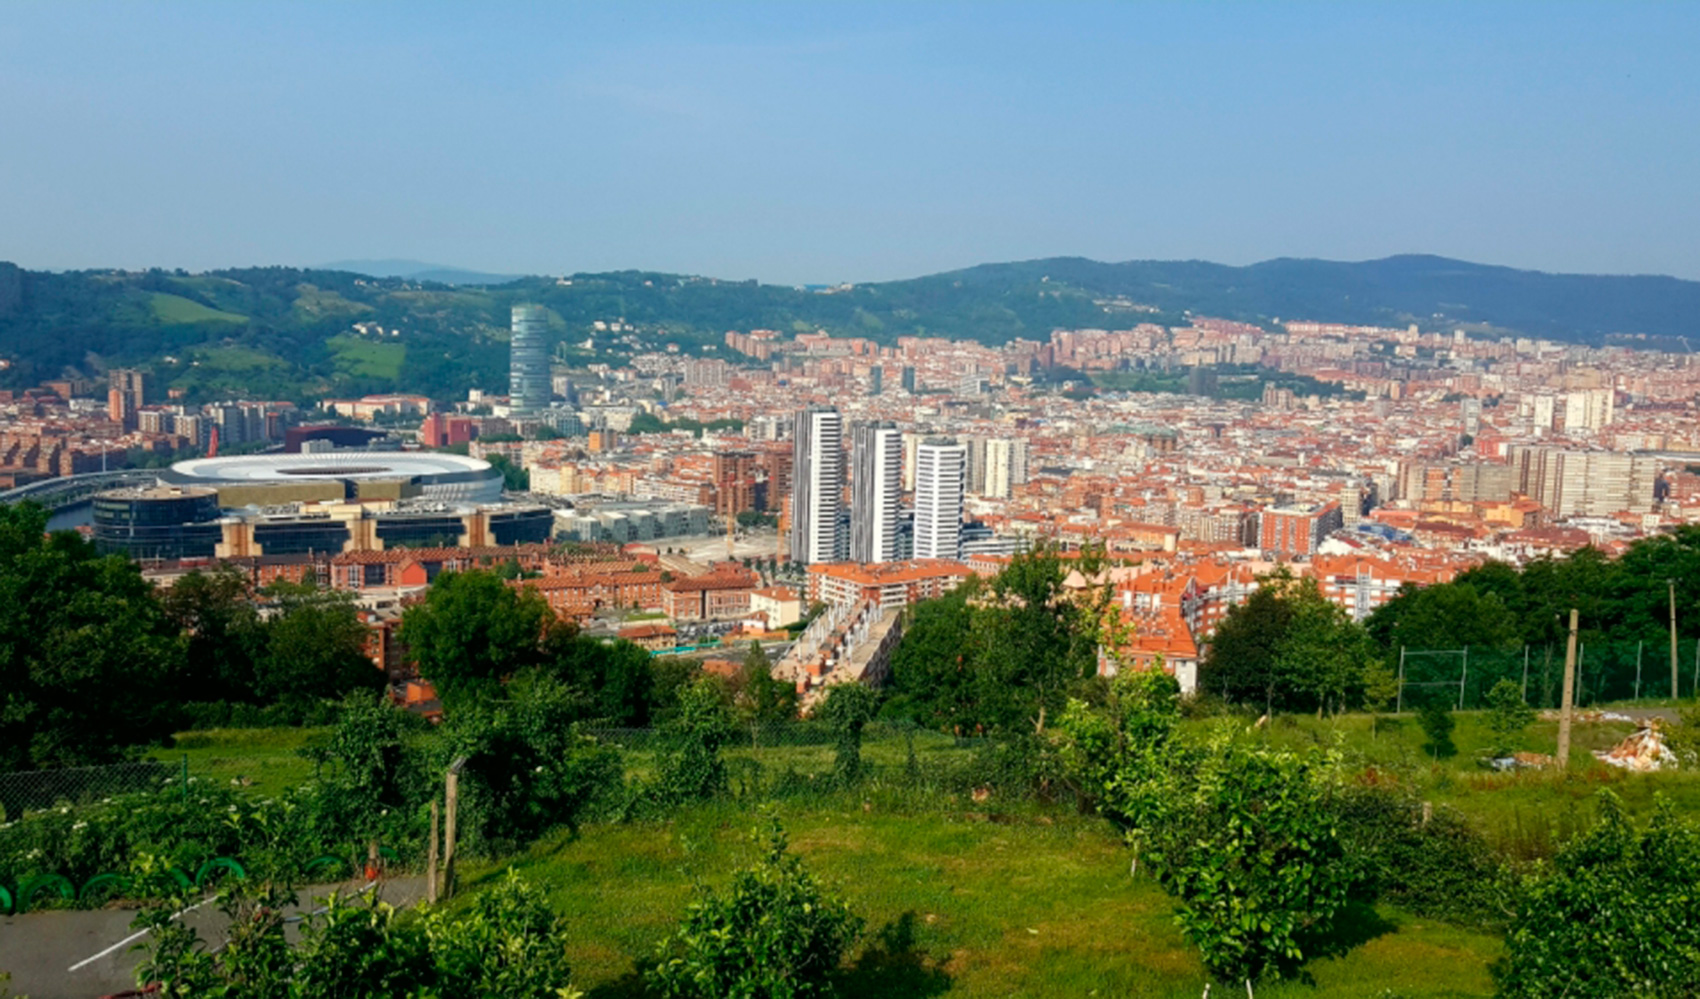 El Ayuntamiento de Bilbao est completando un modelo de despliegue de red urbana eficiente y vanguardista